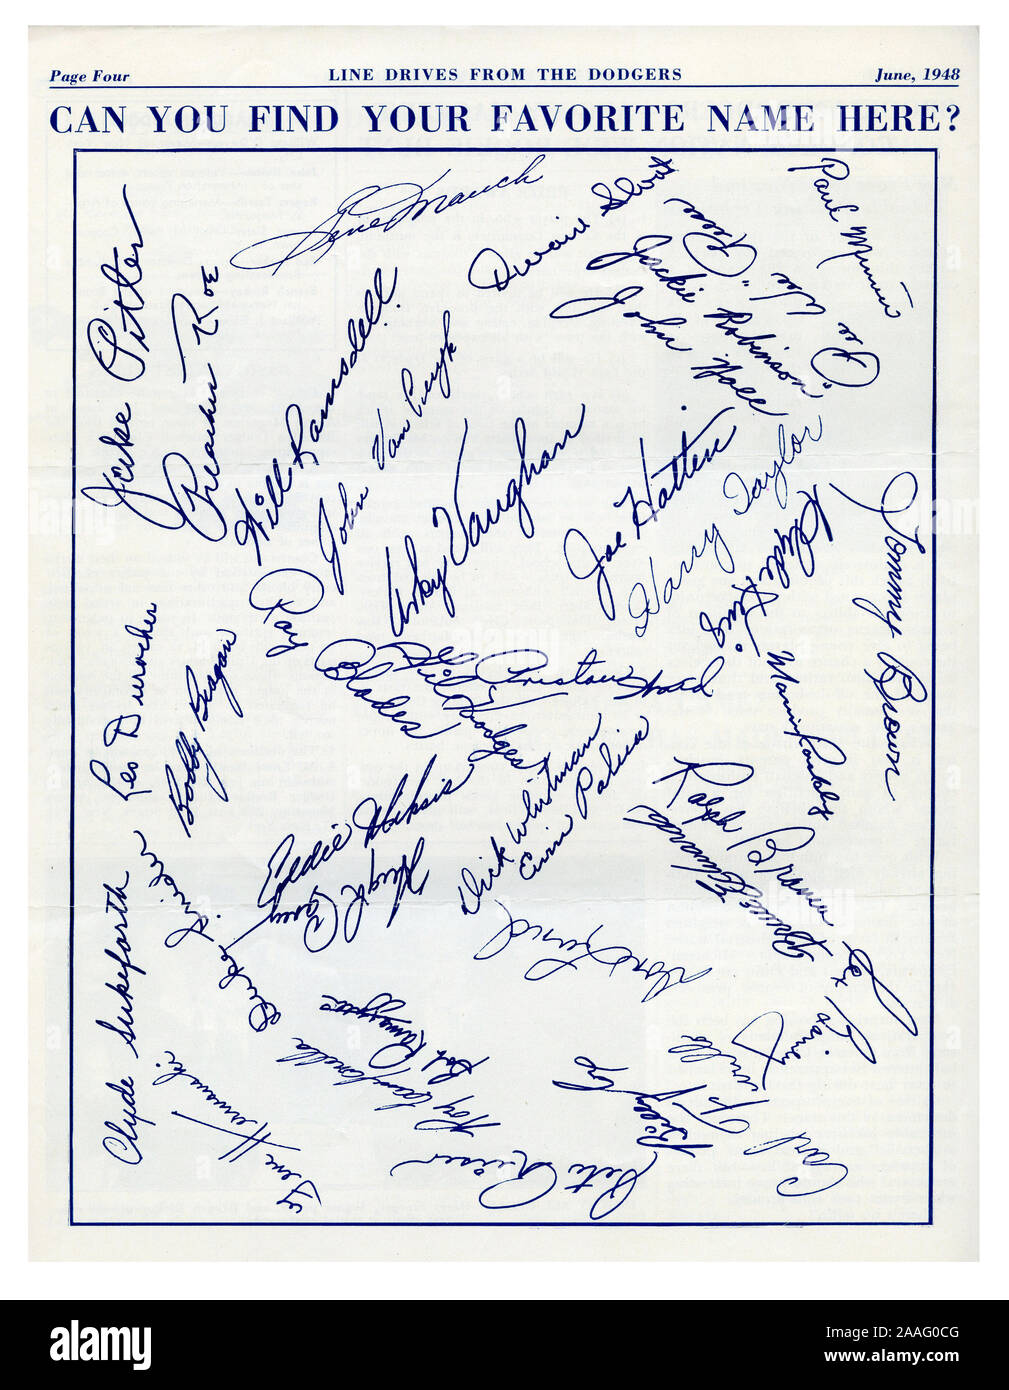 Una pagina nel giugno 1948 edizione dei Dodgers unità di linea, la newsletter per la Brooklyn Dodgers per comunicare con i loro fan, visualizza gli autografi di tutti i team di giocatori tra cui Jackie Robinson, che nel 1947 divenne il primo afro-americano di attraversare il major league di linea di colore e iniziare a integrare il gioco. Foto Stock